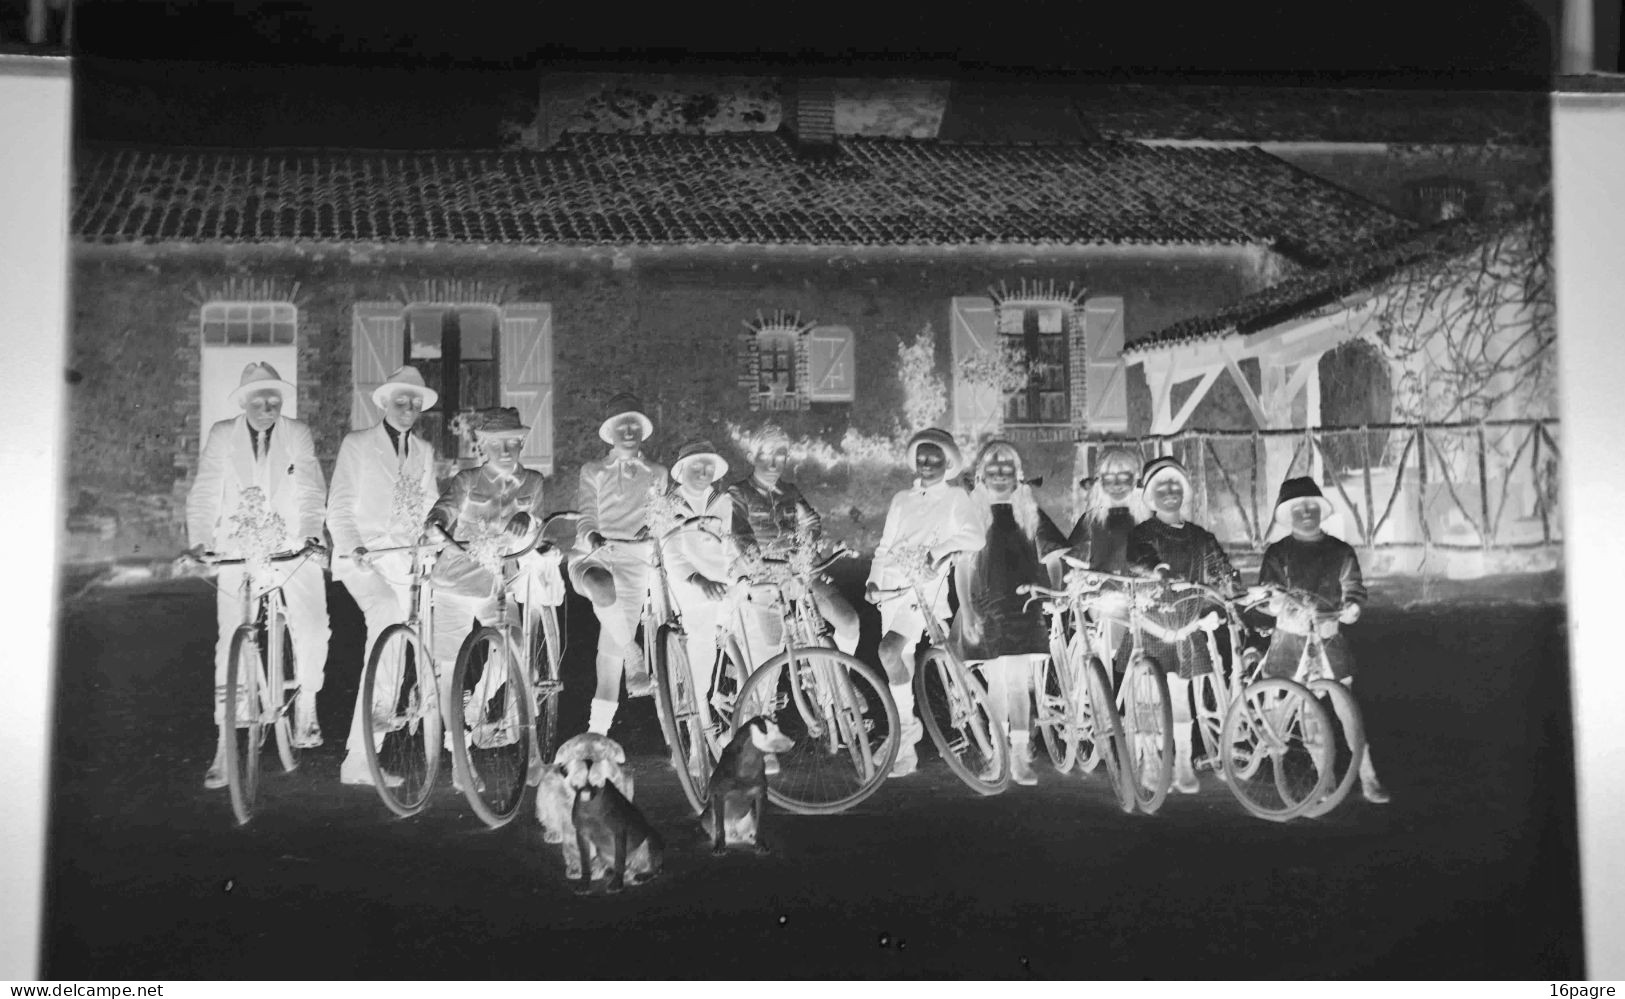 LOT DE TROIS GRANDES PLAQUES DE VERRE. GROUPE DE JEUNES CYCLISTES. MACHECOUL.CHIENS, LOIRE-ATLANTIQUE. 1950 - Glass Slides